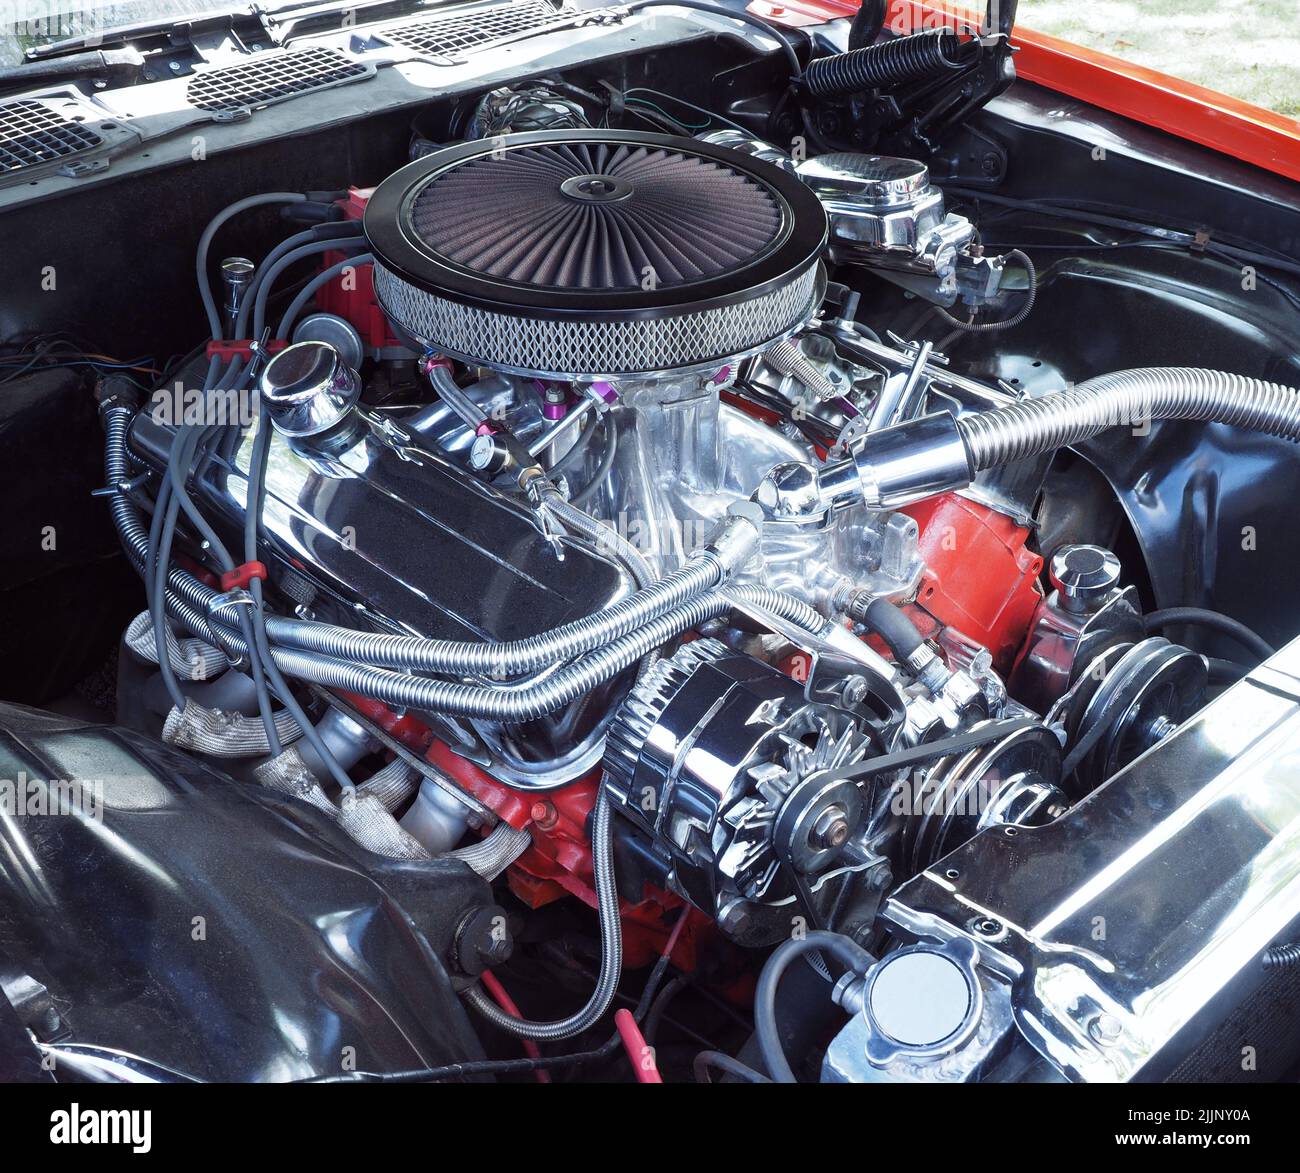 Ein 1970, Chevy 7,4lt, 454 Kubikzoll, großer Block V8 Benzinmotor. Chromkühler, Wasserschläuche und Kraftstoffleitungen usw. Keine Logos. Stockfoto